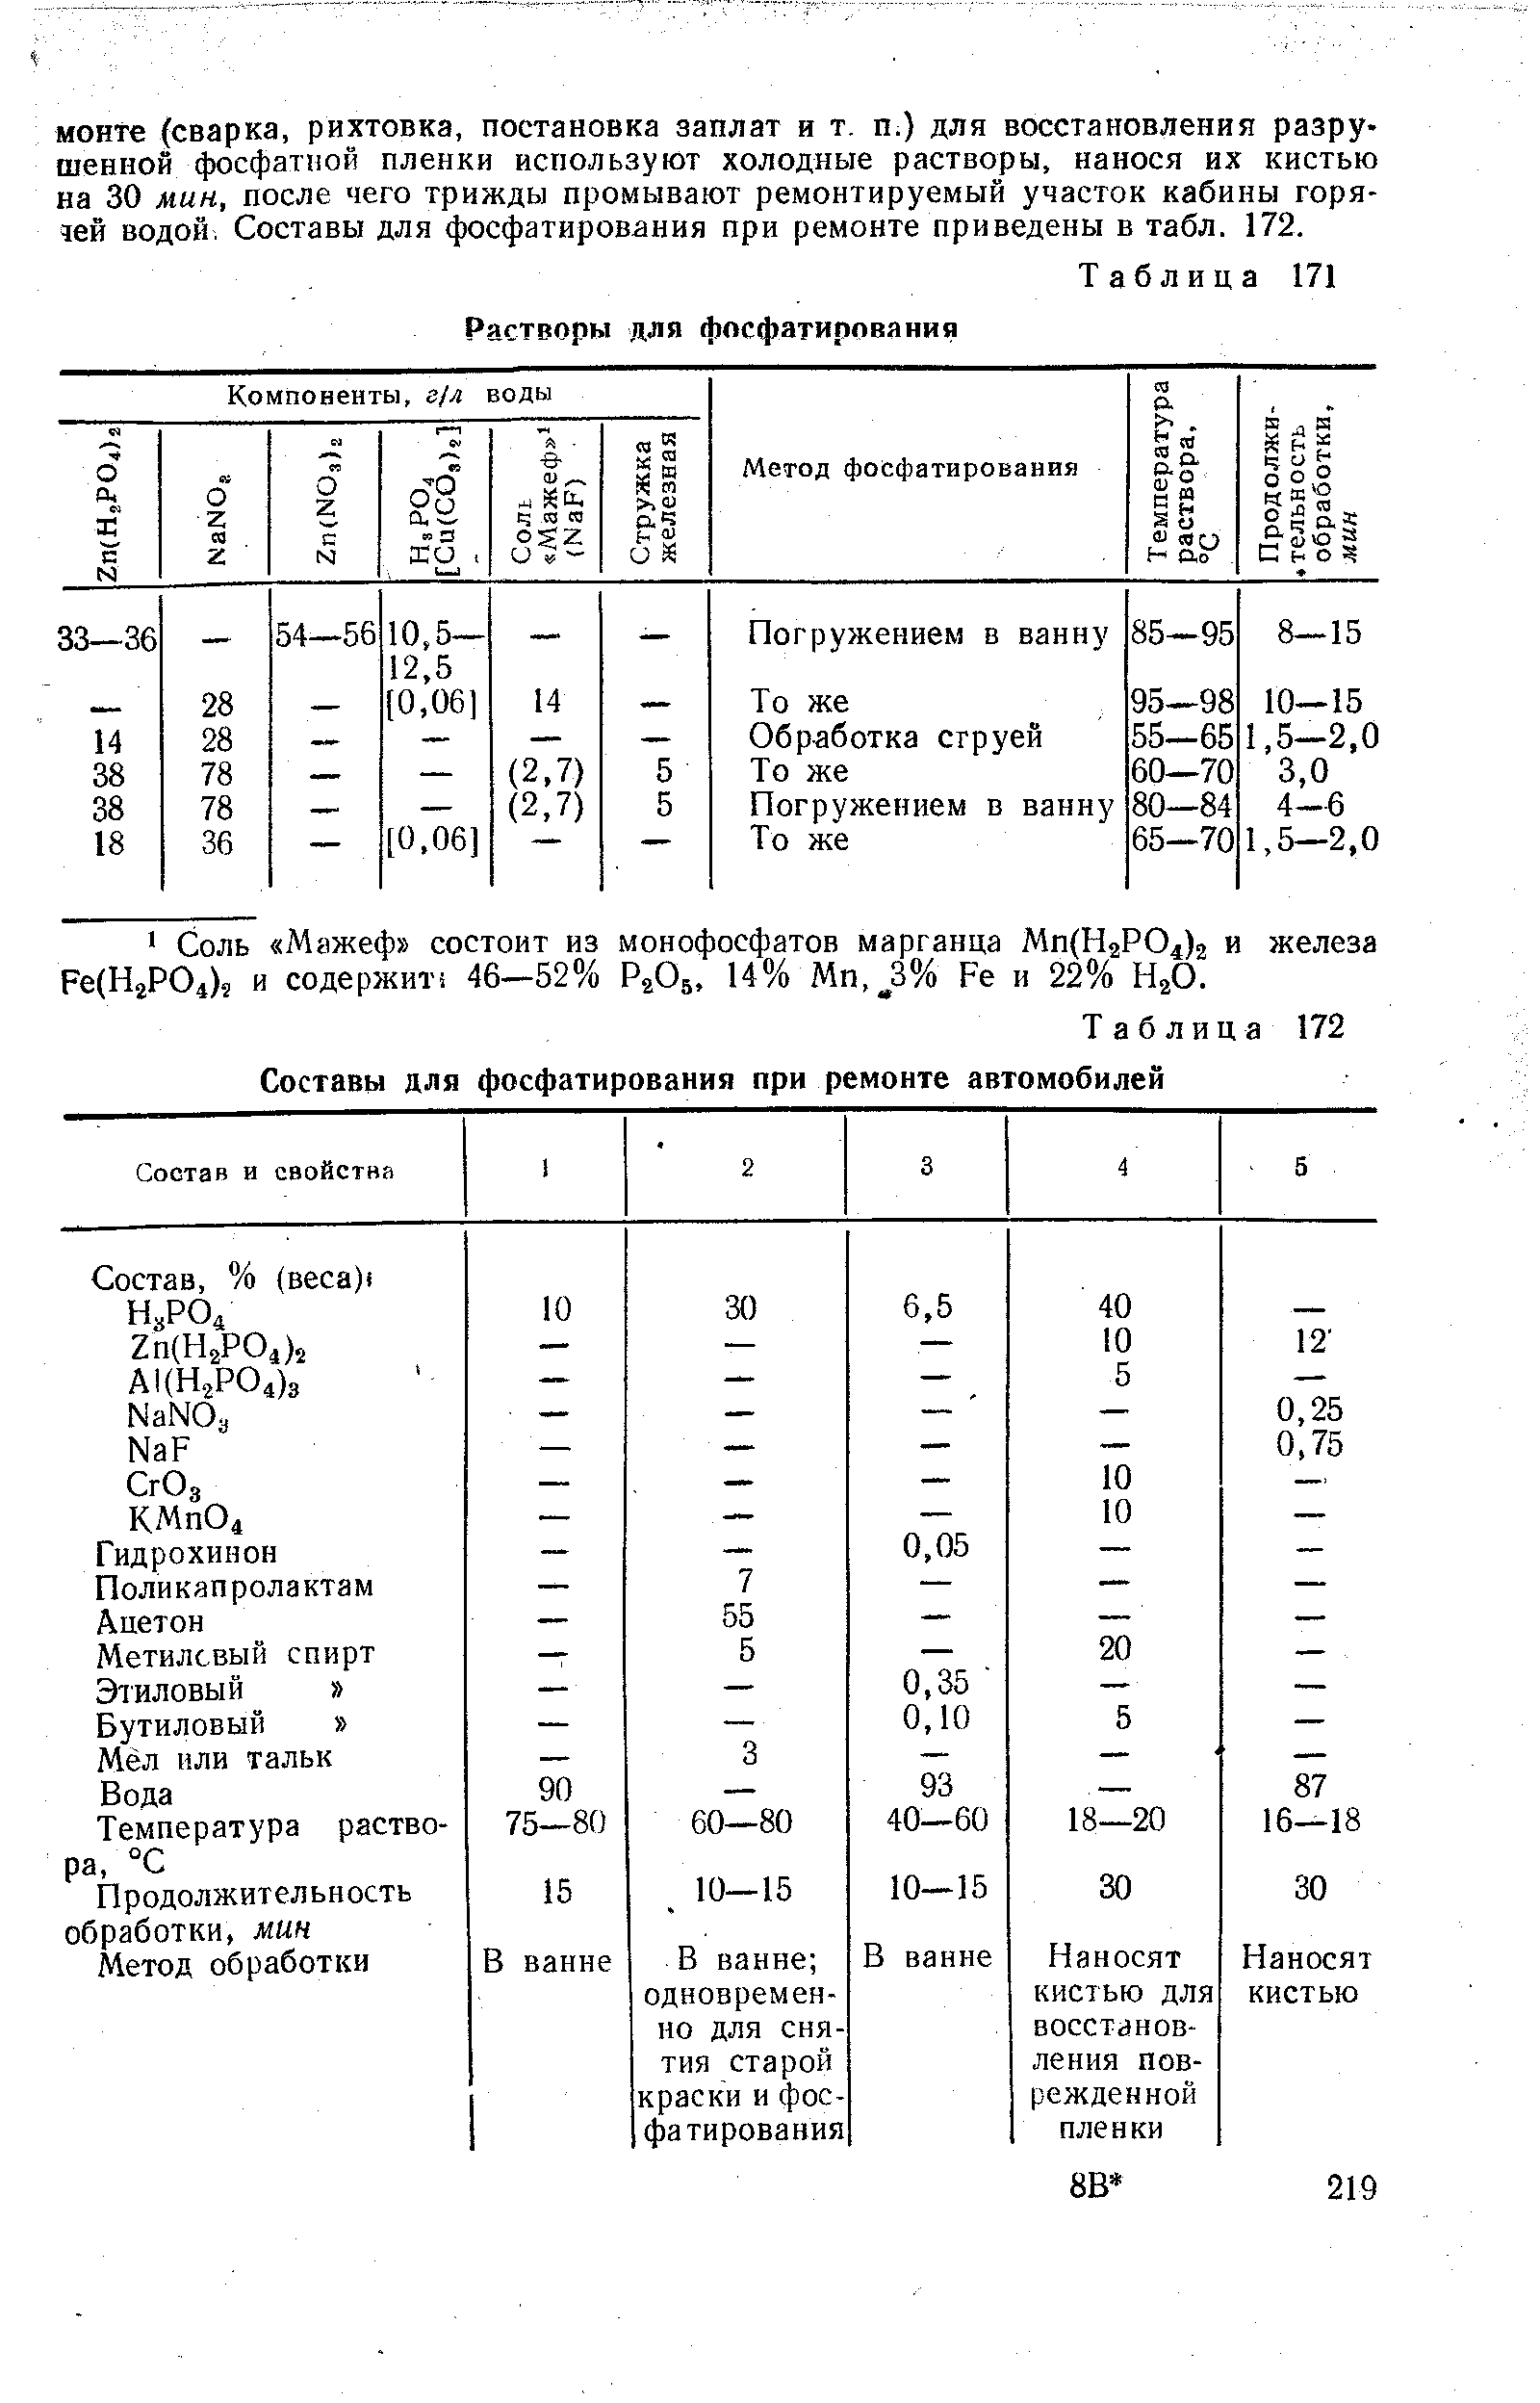 Таблица 171 Растворы для фосфатирования 
